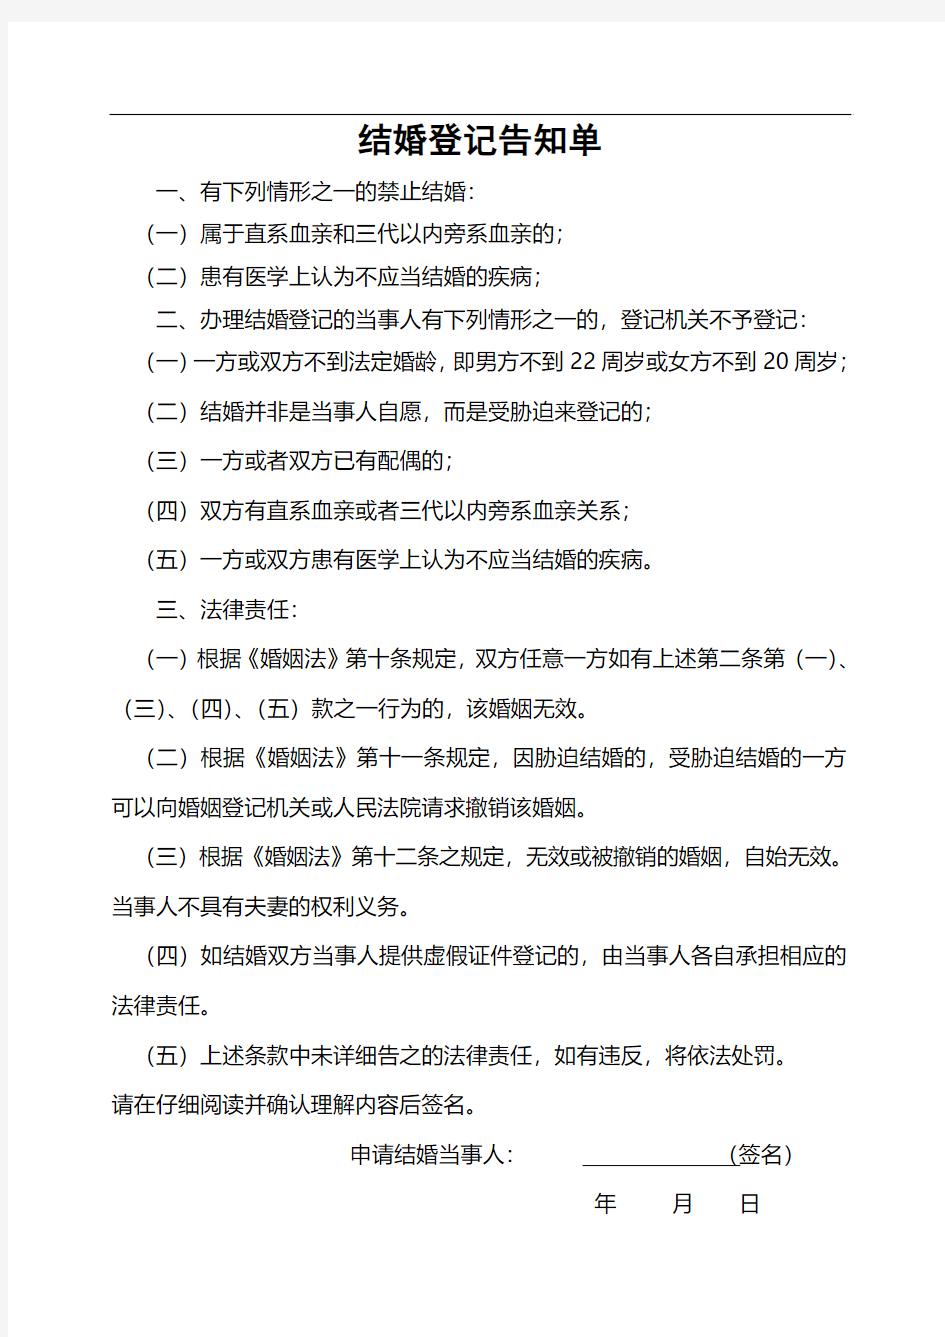 武汉市《申请结婚登记声明书》 《生育服务证登记表》